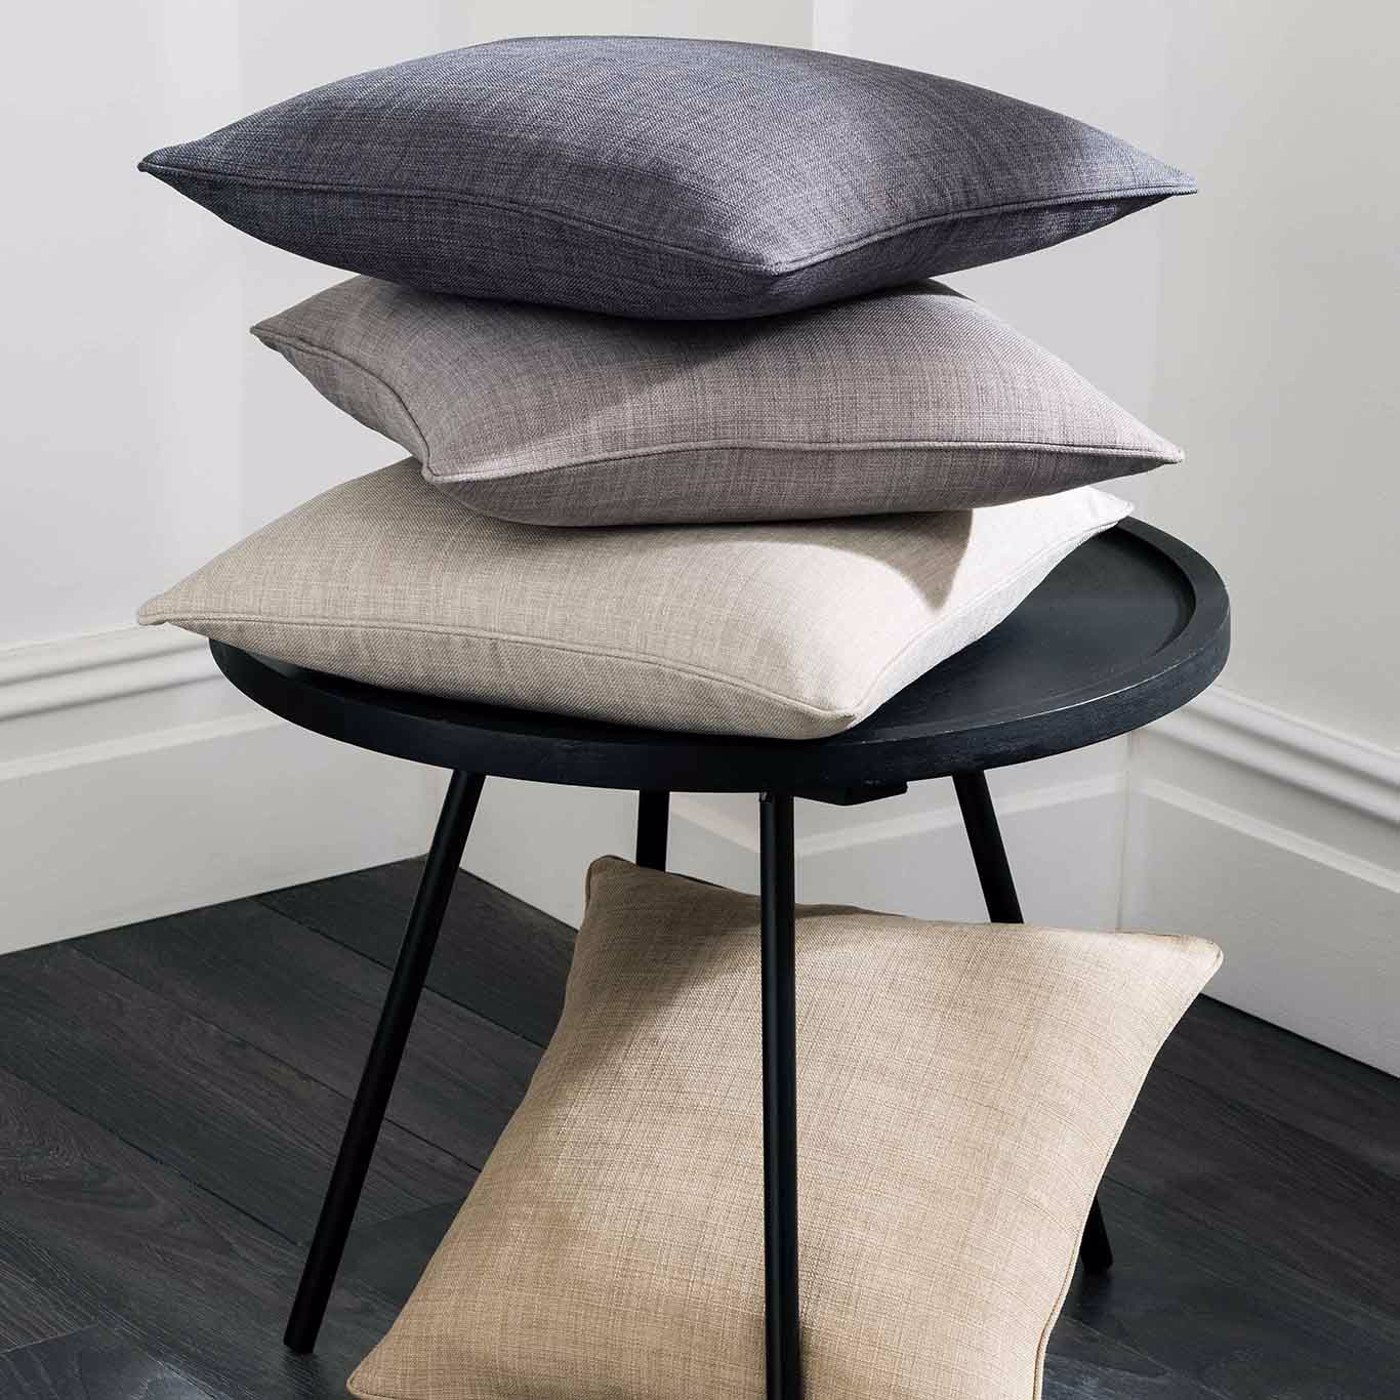 Elba Grey Cushions by CNC